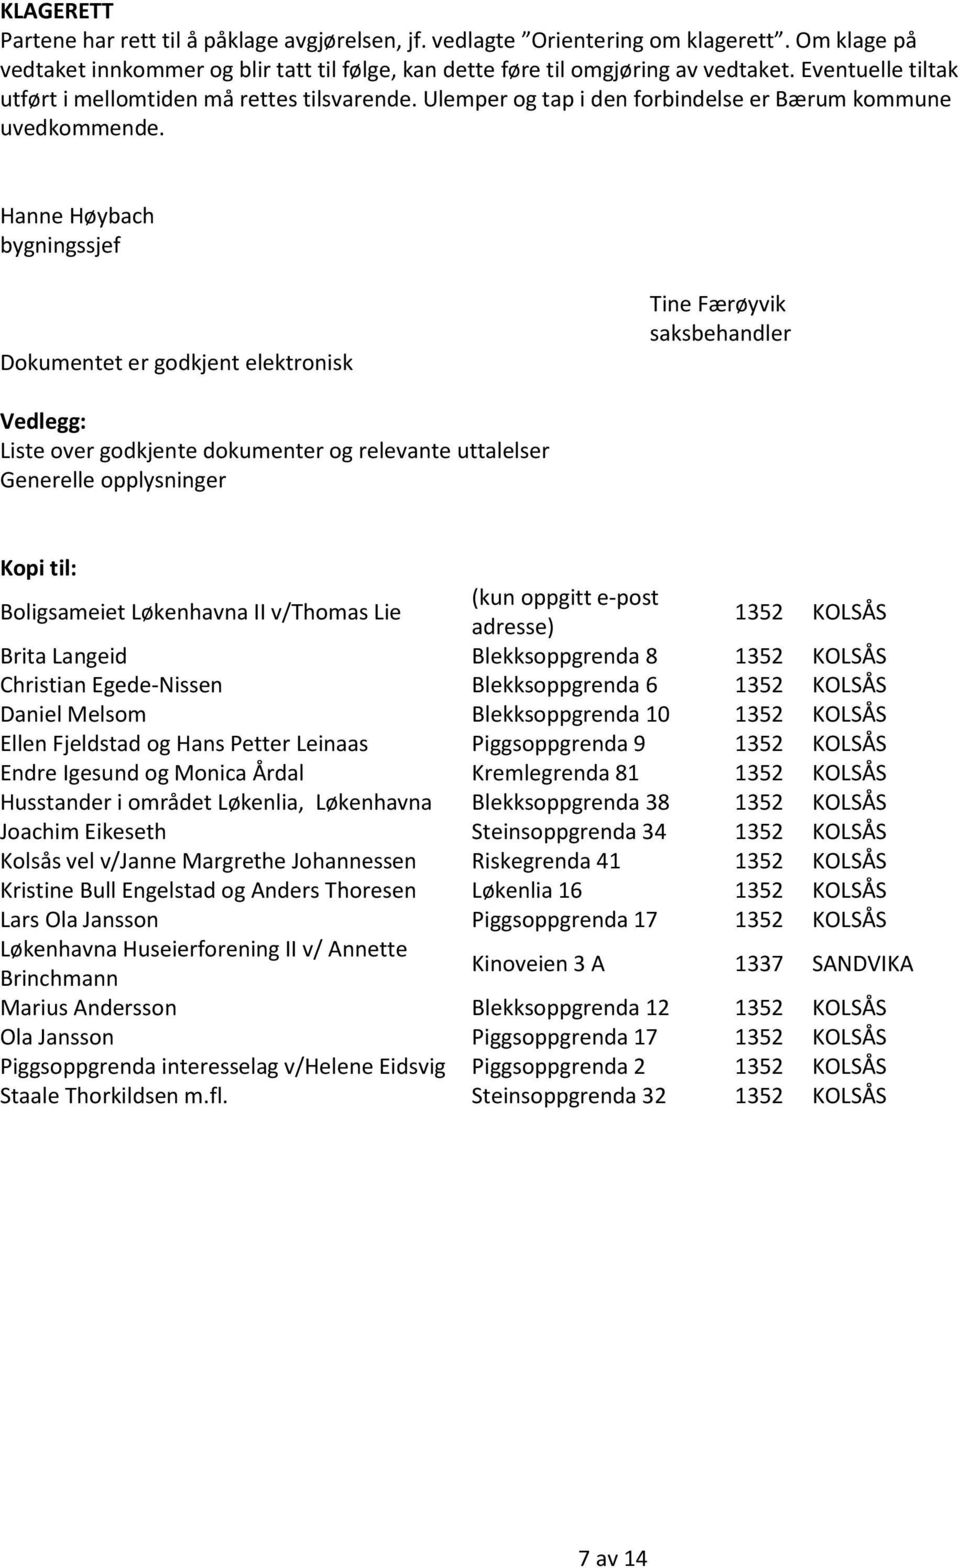 Hanne Høybach bygningssjef Dokumentet er godkjent elektronisk Tine Færøyvik saksbehandler Vedlegg: Liste over godkjente dokumenter og relevante uttalelser Generelle opplysninger Kopi til: